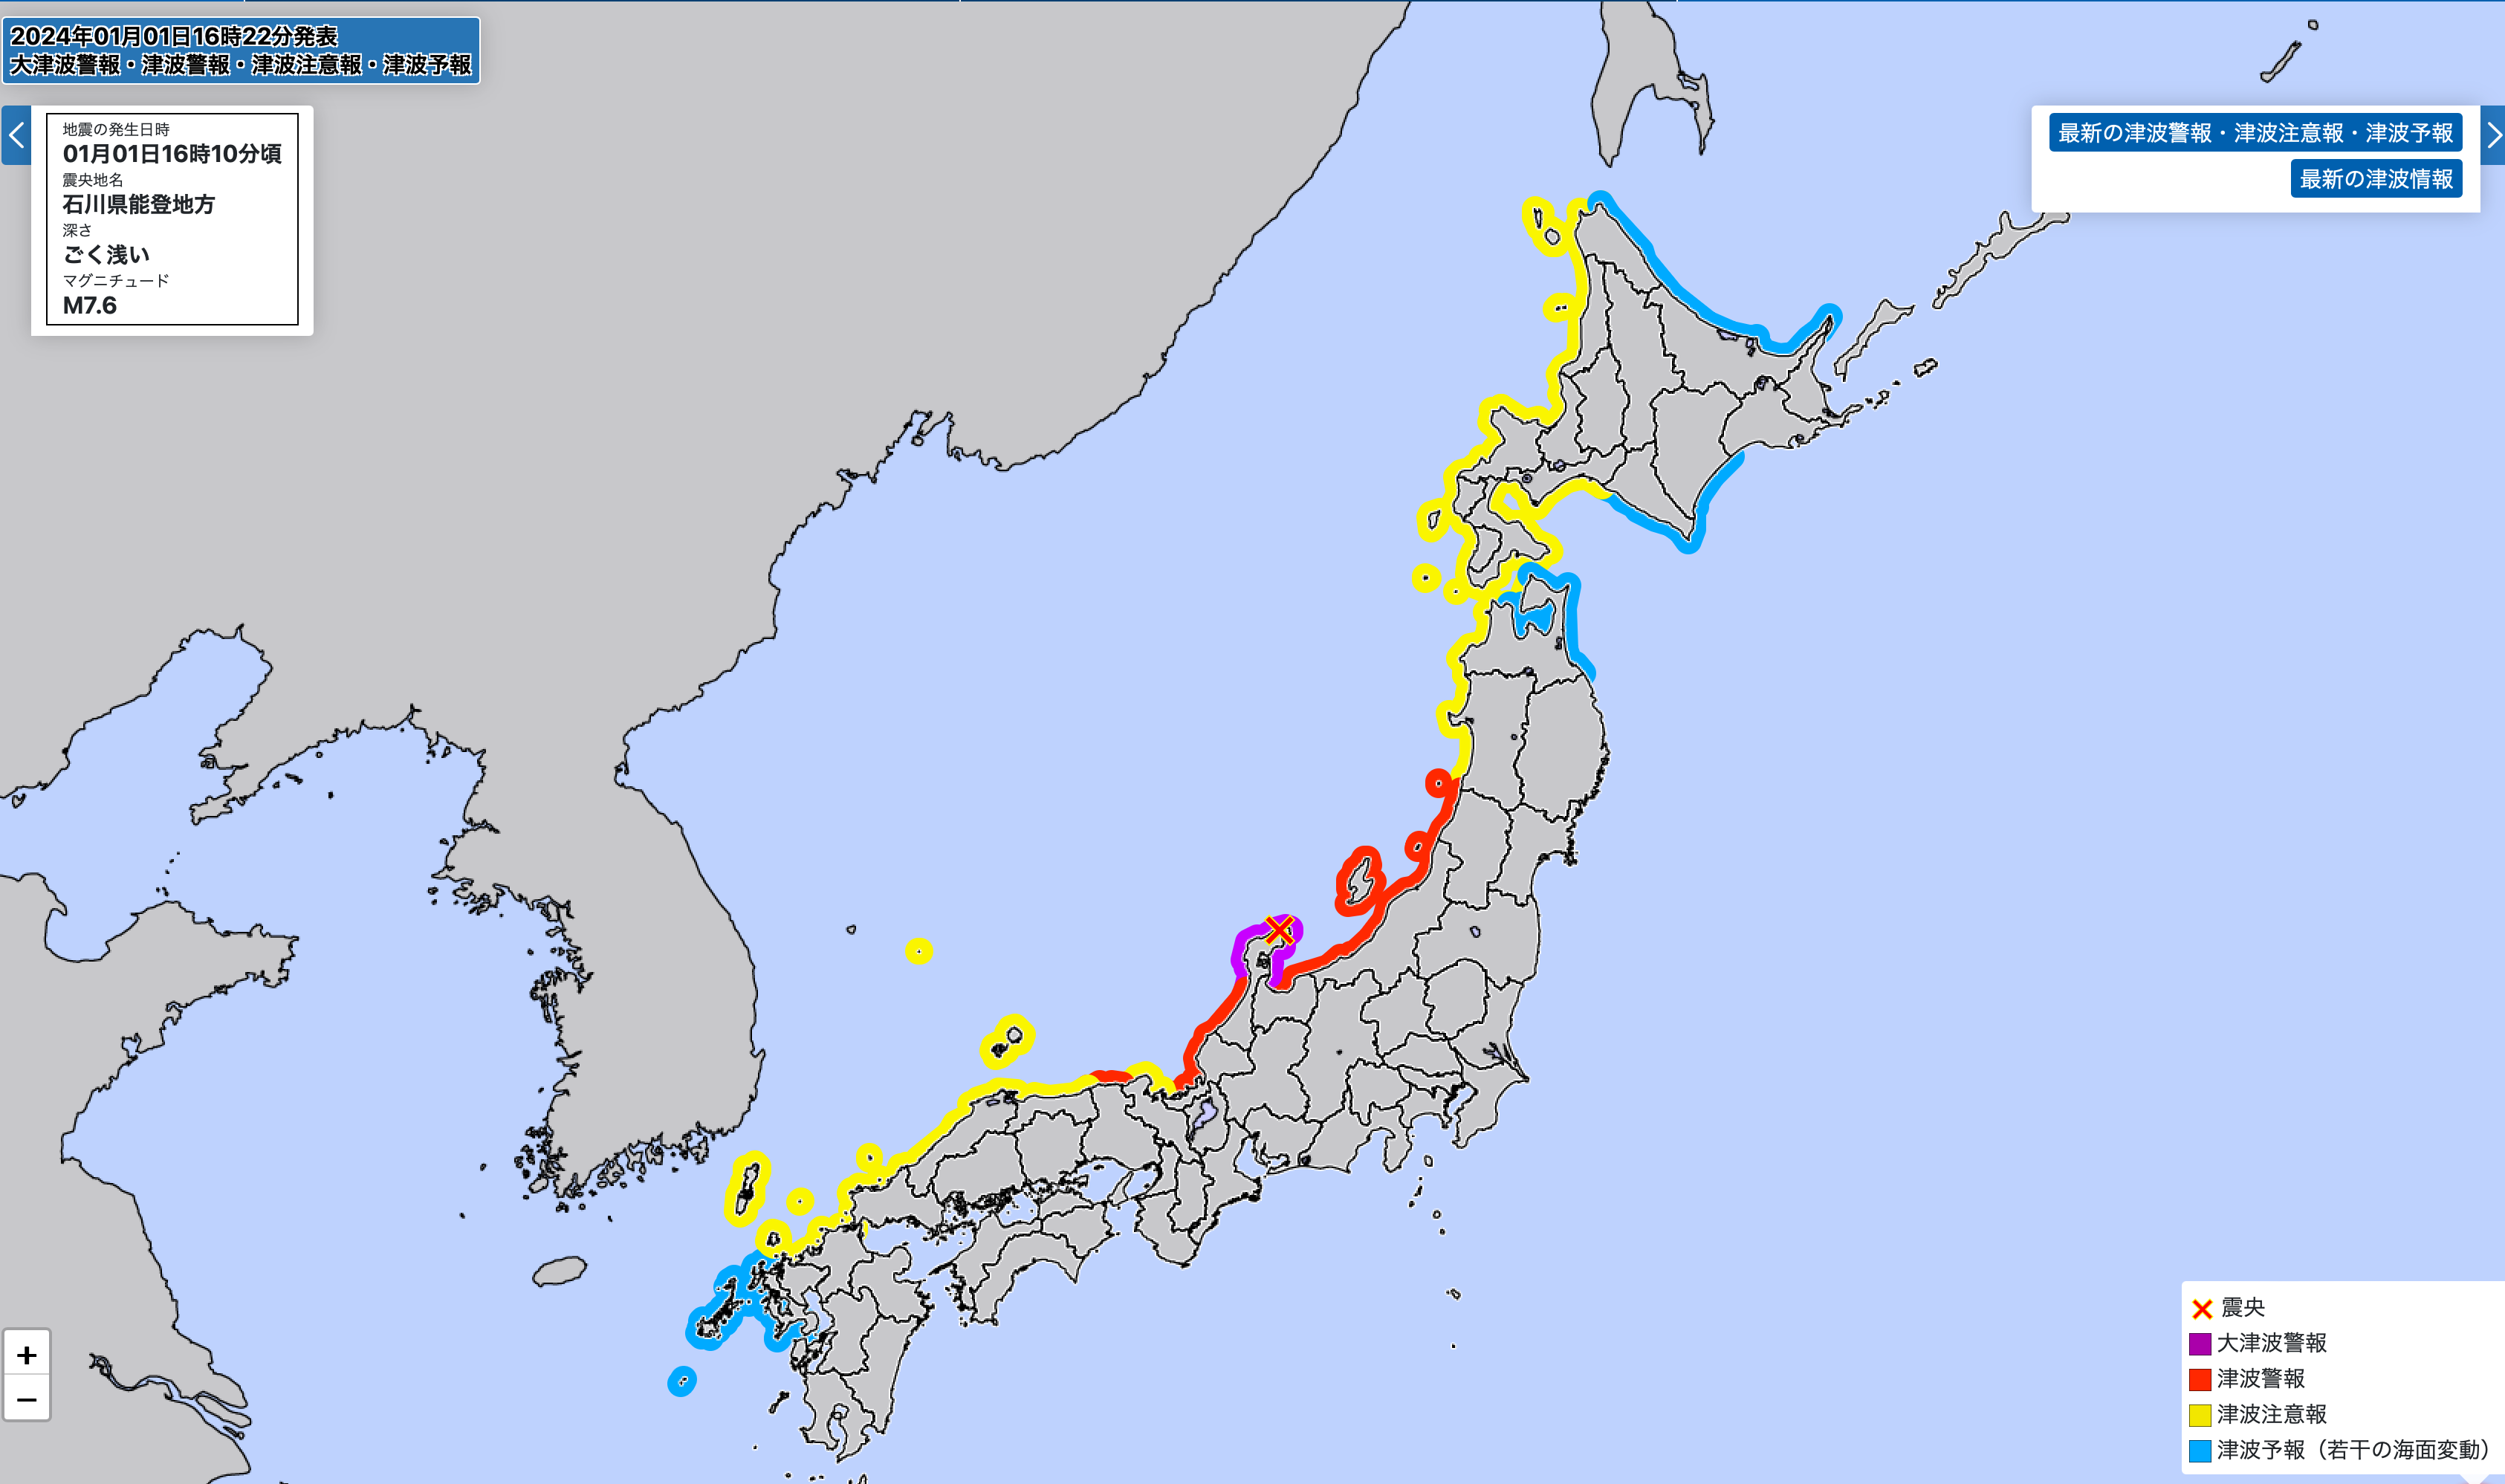 Das X auf der Karte markiert das Epizentrum des Erdbebens. Für die farbig markierten Küstengebiete wurde ein Tsunami-Alarm herausgegeben.